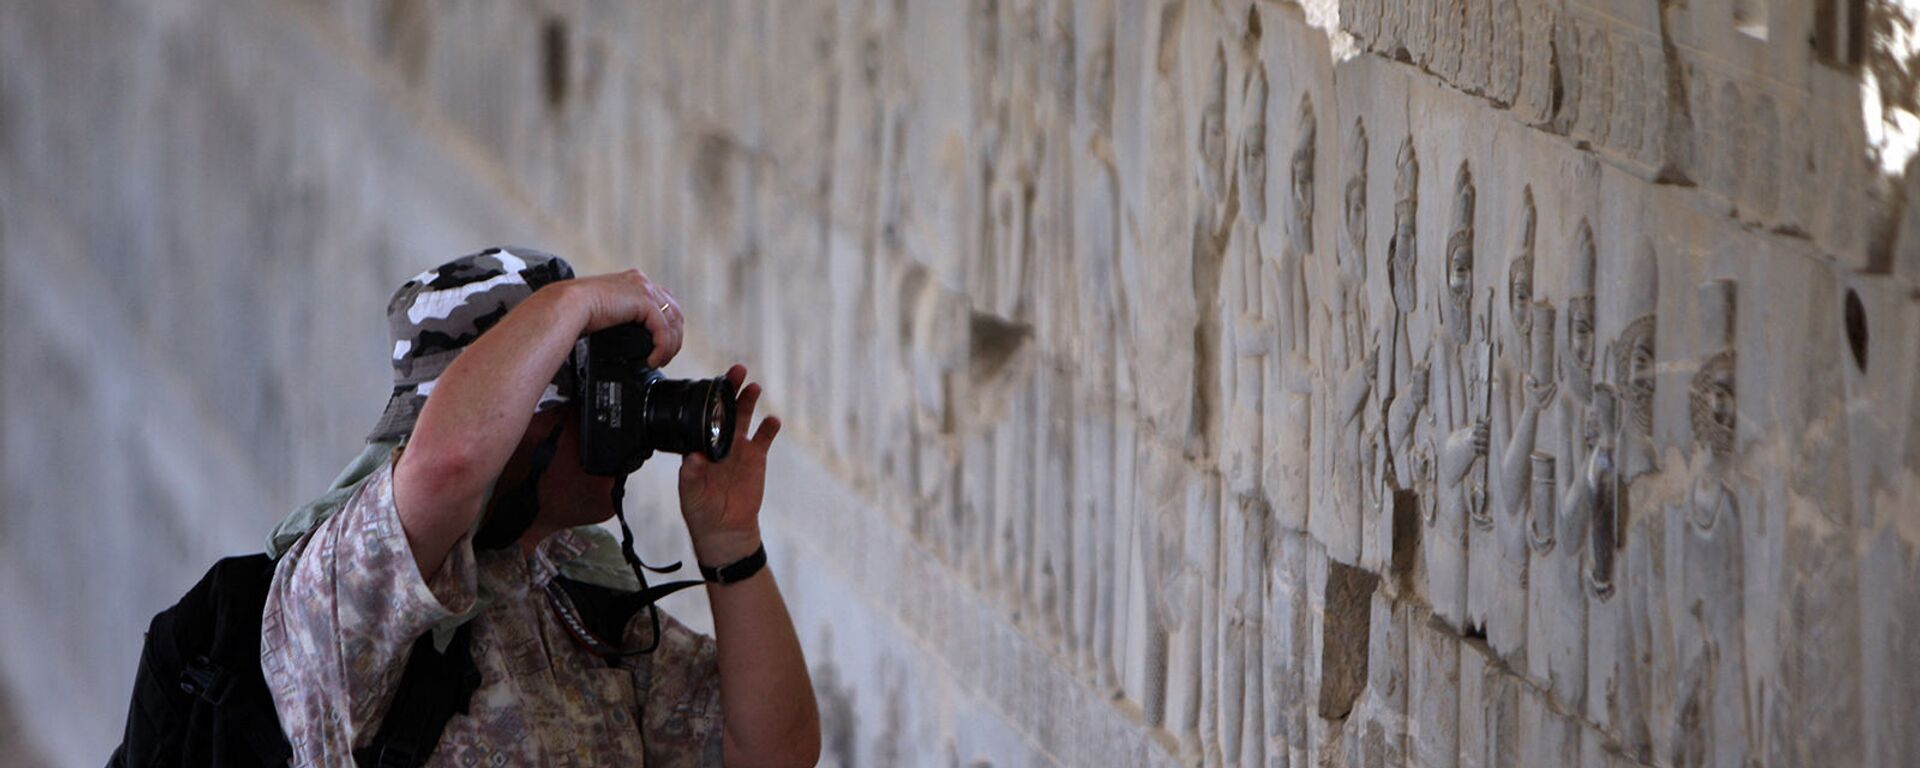 Турист фотографирует во время экскурсии по древнему имперскому городу Персеполис, столице персидской династии Археменидов - Sputnik Армения, 1920, 23.06.2021